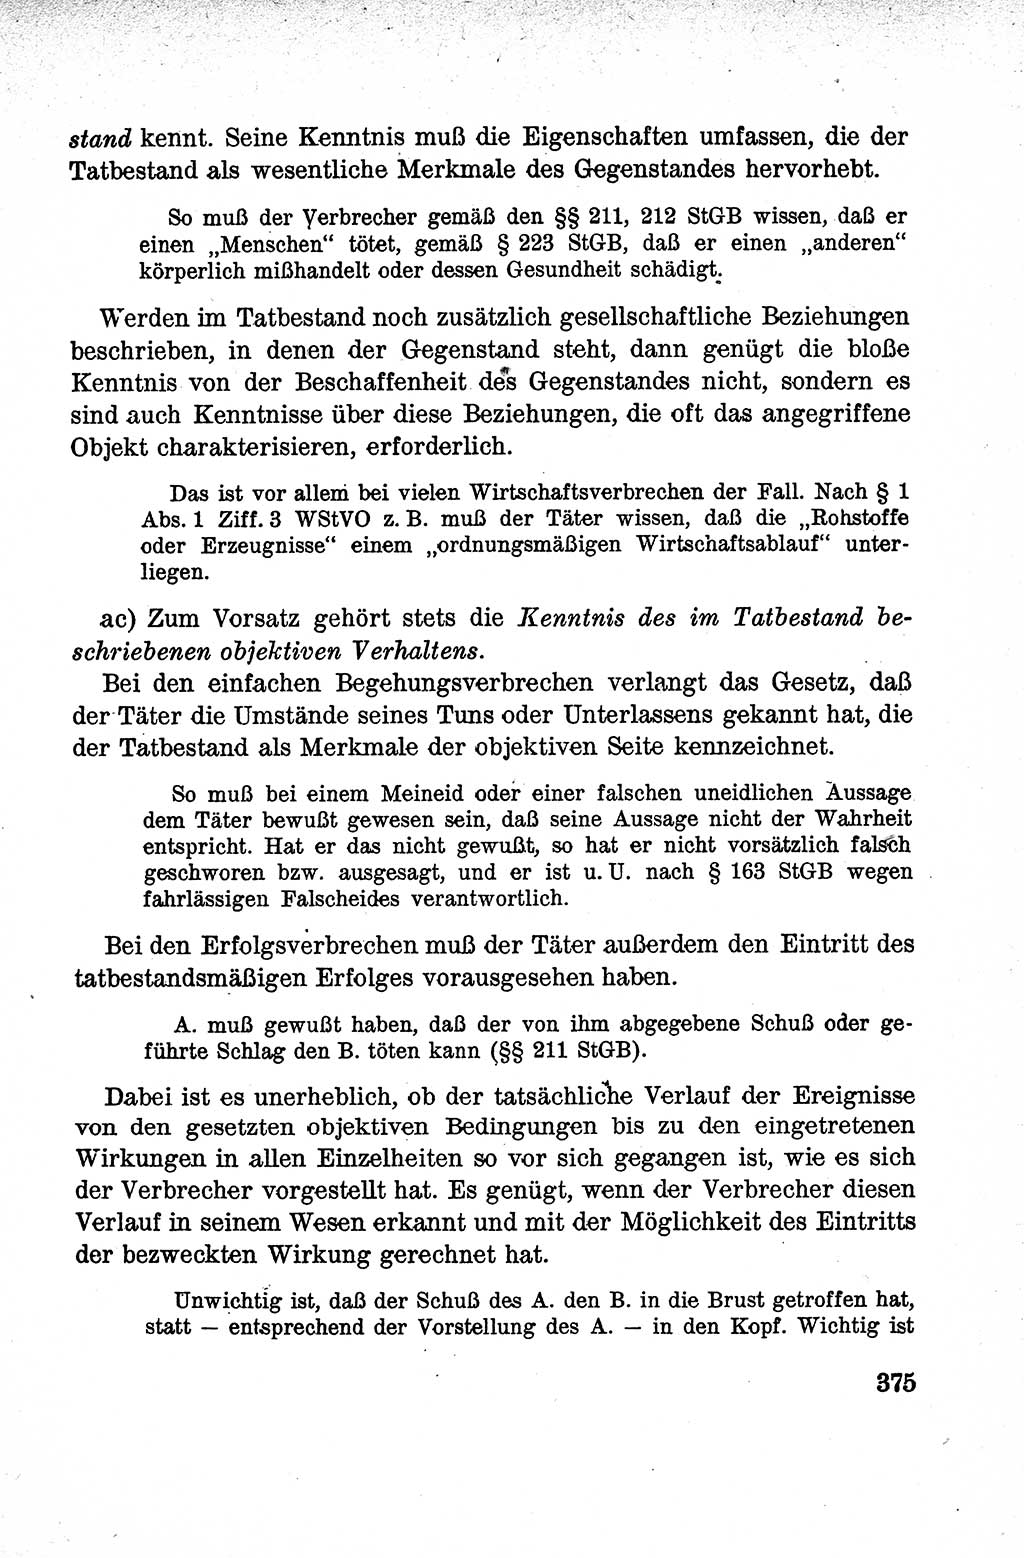 Lehrbuch des Strafrechts der Deutschen Demokratischen Republik (DDR), Allgemeiner Teil 1959, Seite 375 (Lb. Strafr. DDR AT 1959, S. 375)